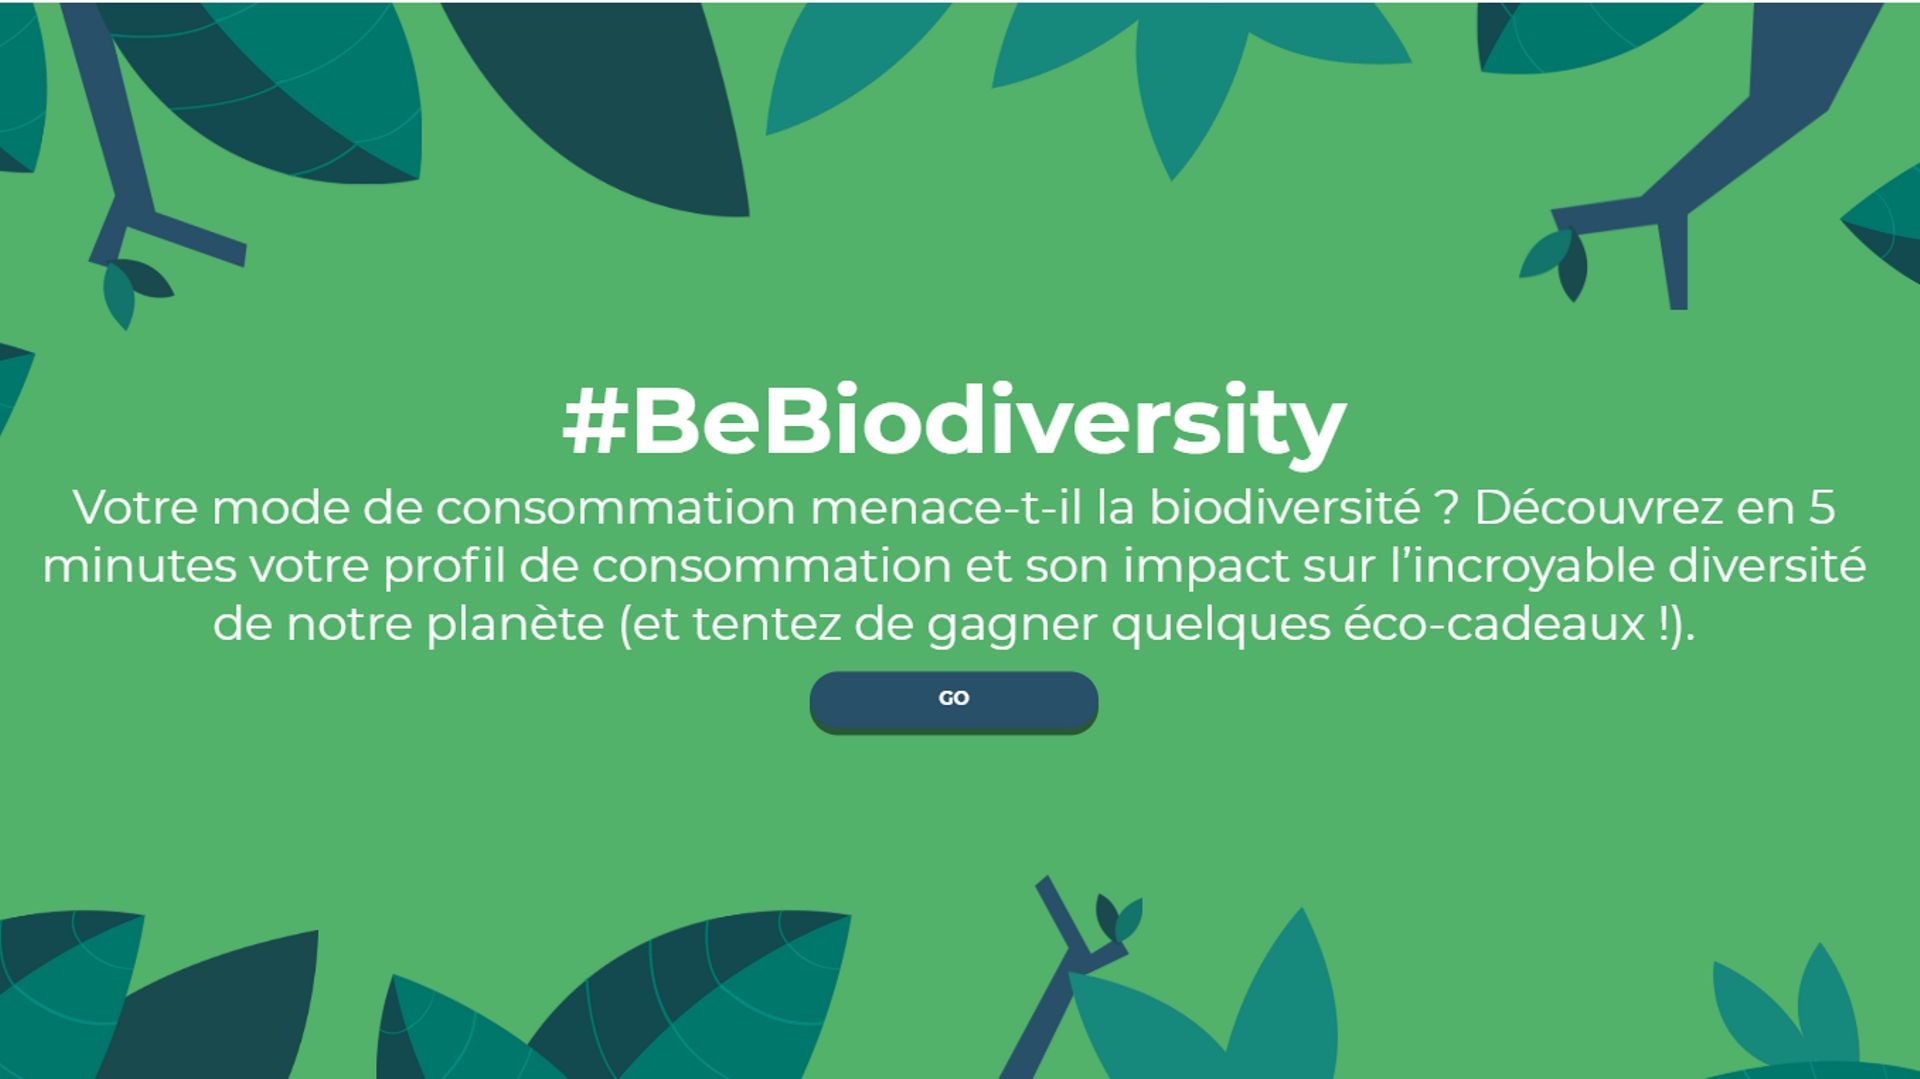 La campagne #BeBiodiversity a été lancée l'année dernière